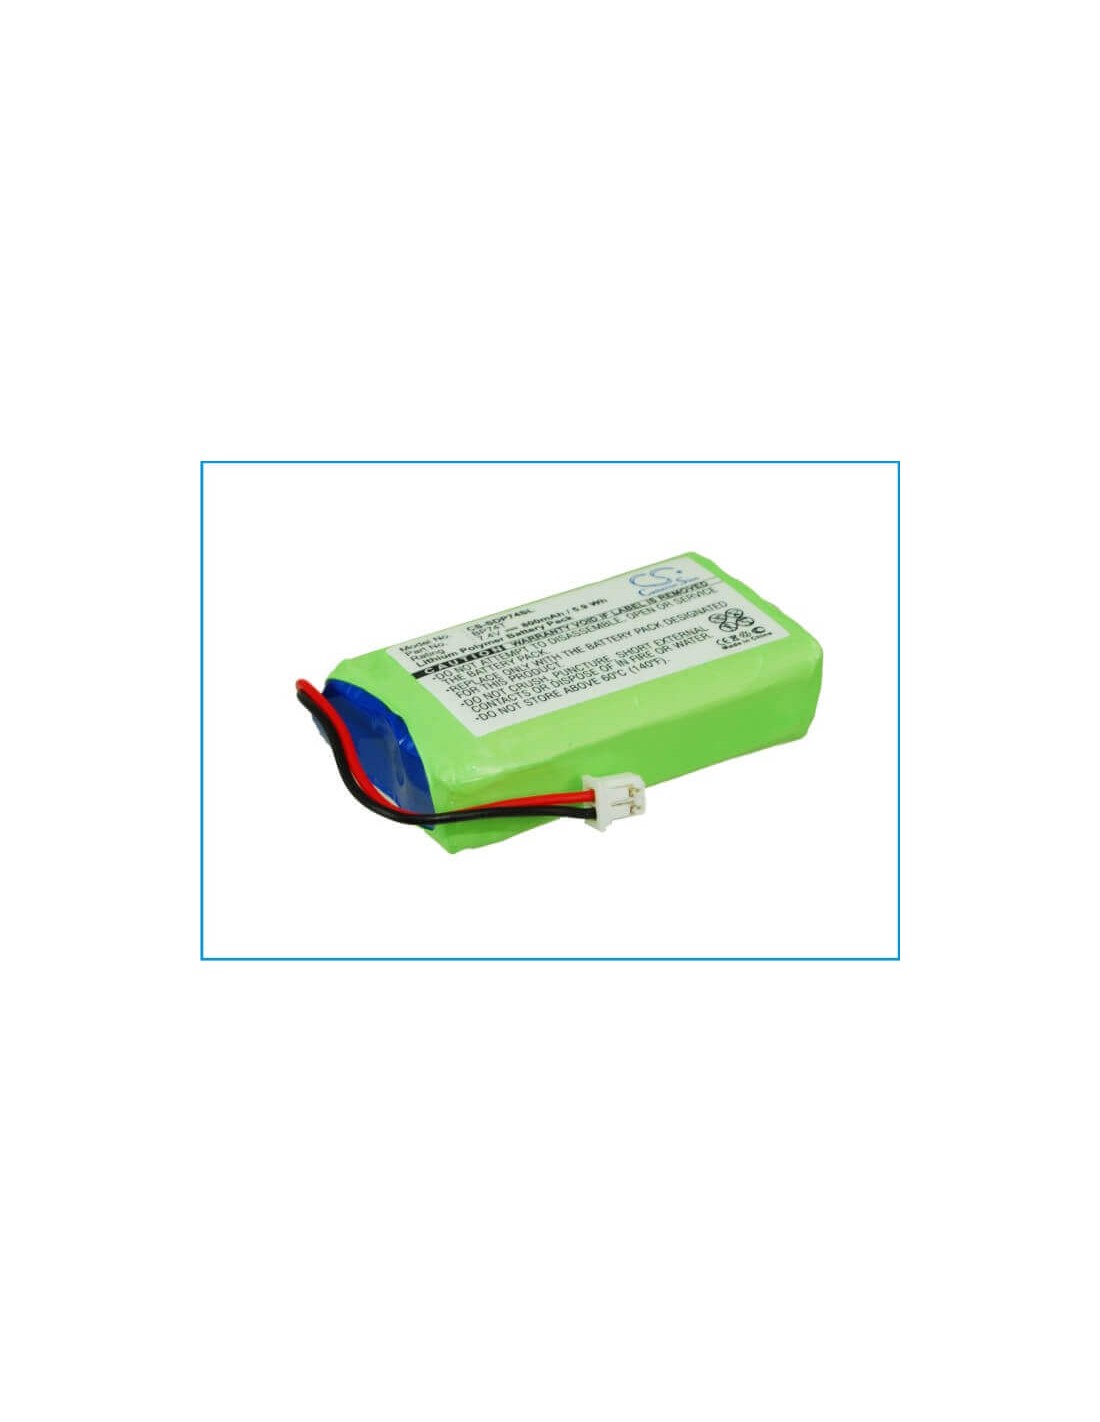 Battery for Dogtra Transmitter 2500t, Transmitter 2500b, Transmitter 2502t 7.4V, 800mAh - 5.92Wh